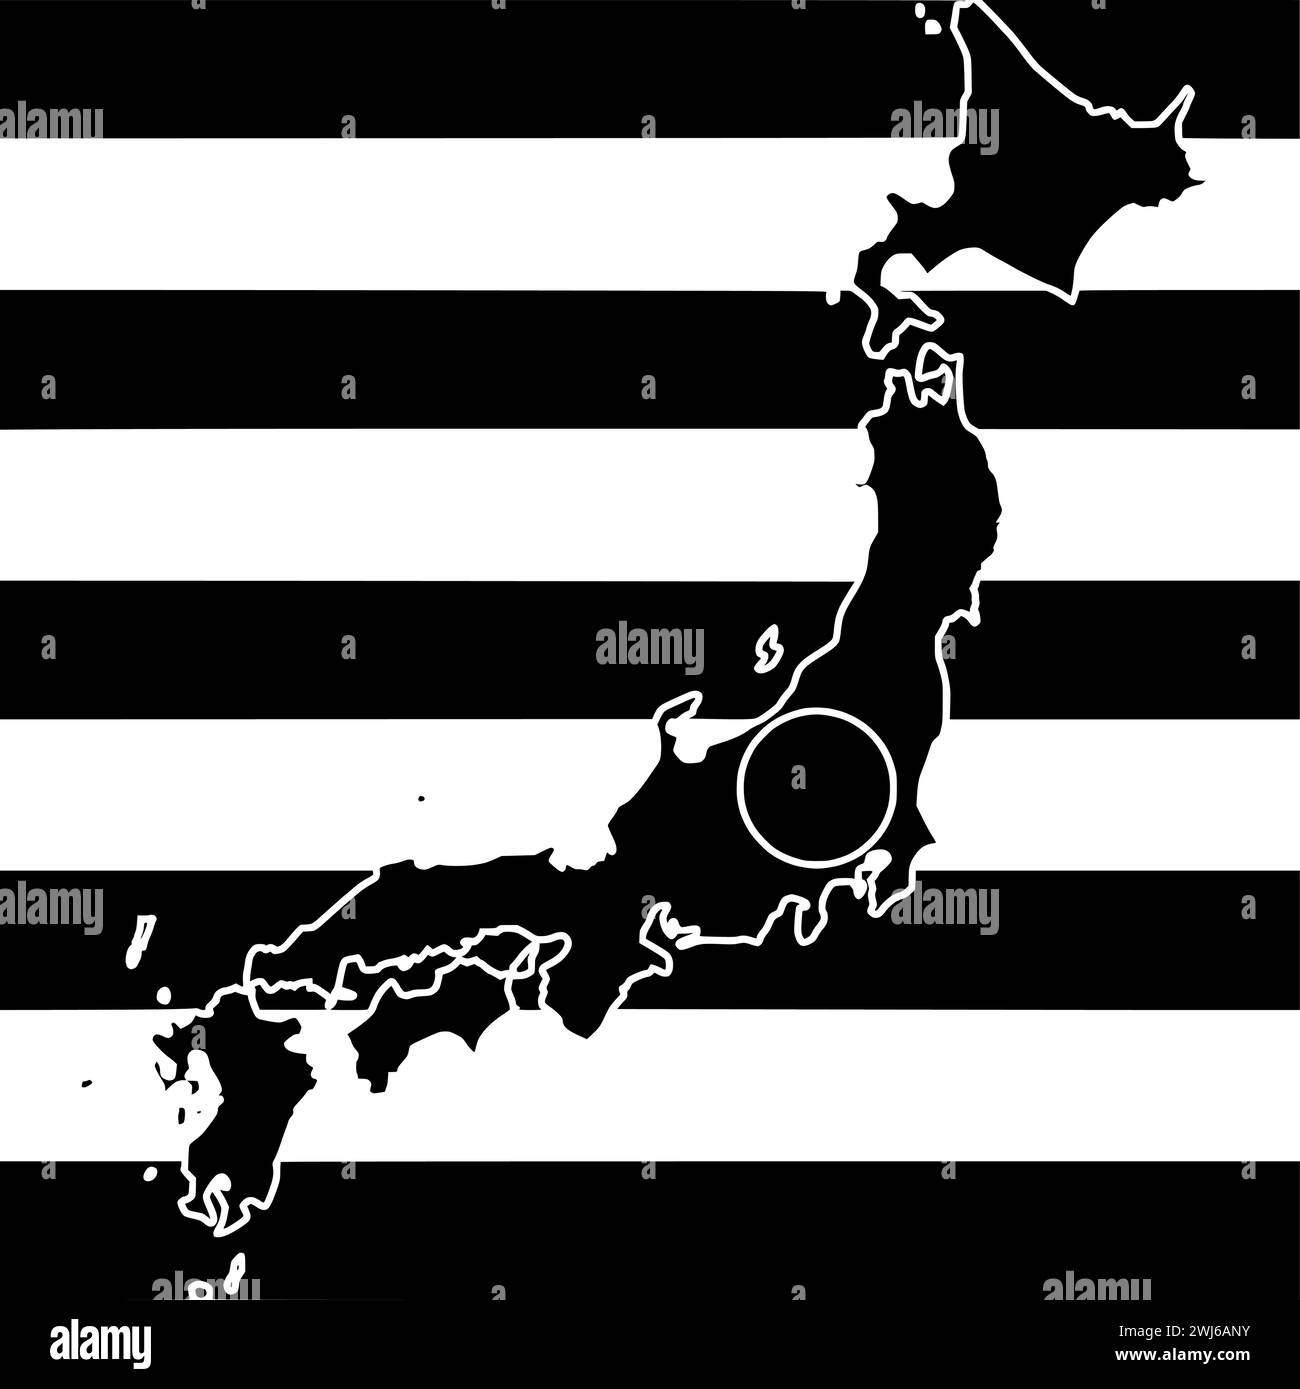 Schwarze japan-Silhouette oder flache Landkarte mit Streifen-Logo-Flagge für japaner mit Nationalsymbol und Nation-Form Land als patriotisch bis strukturiert Stock Vektor